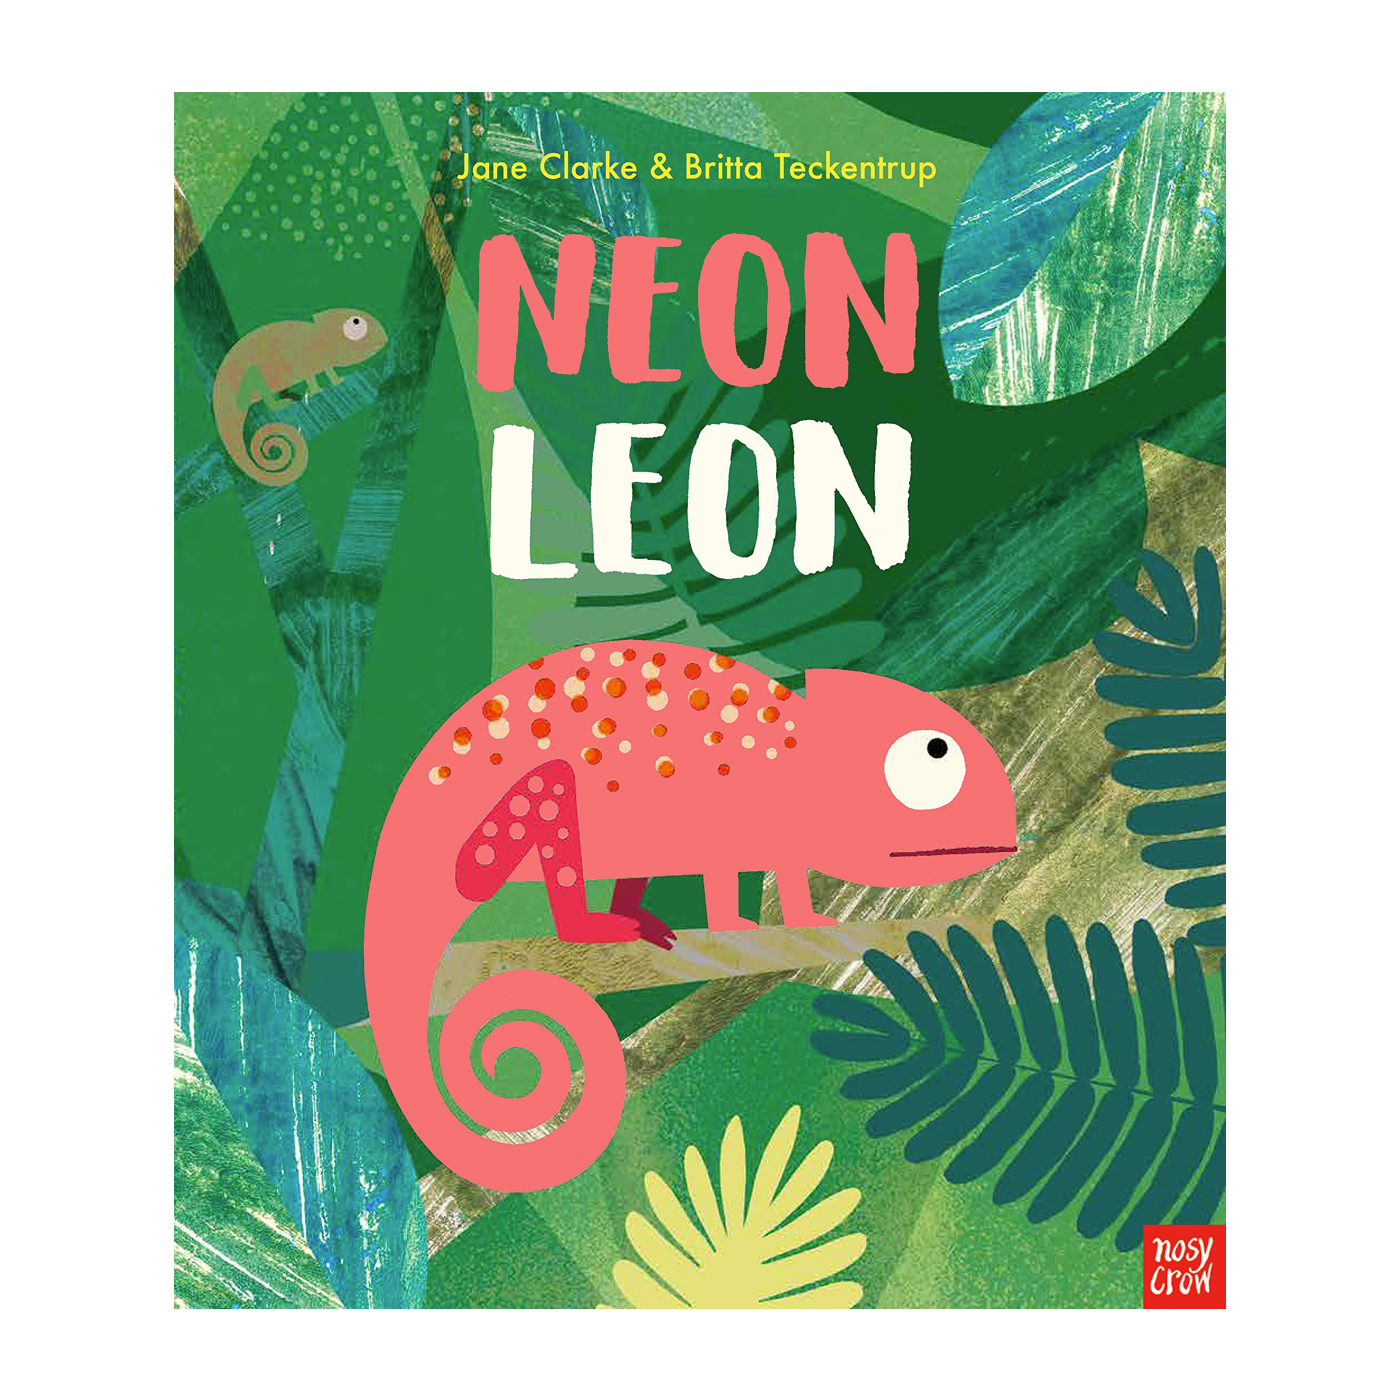  Neon Leon